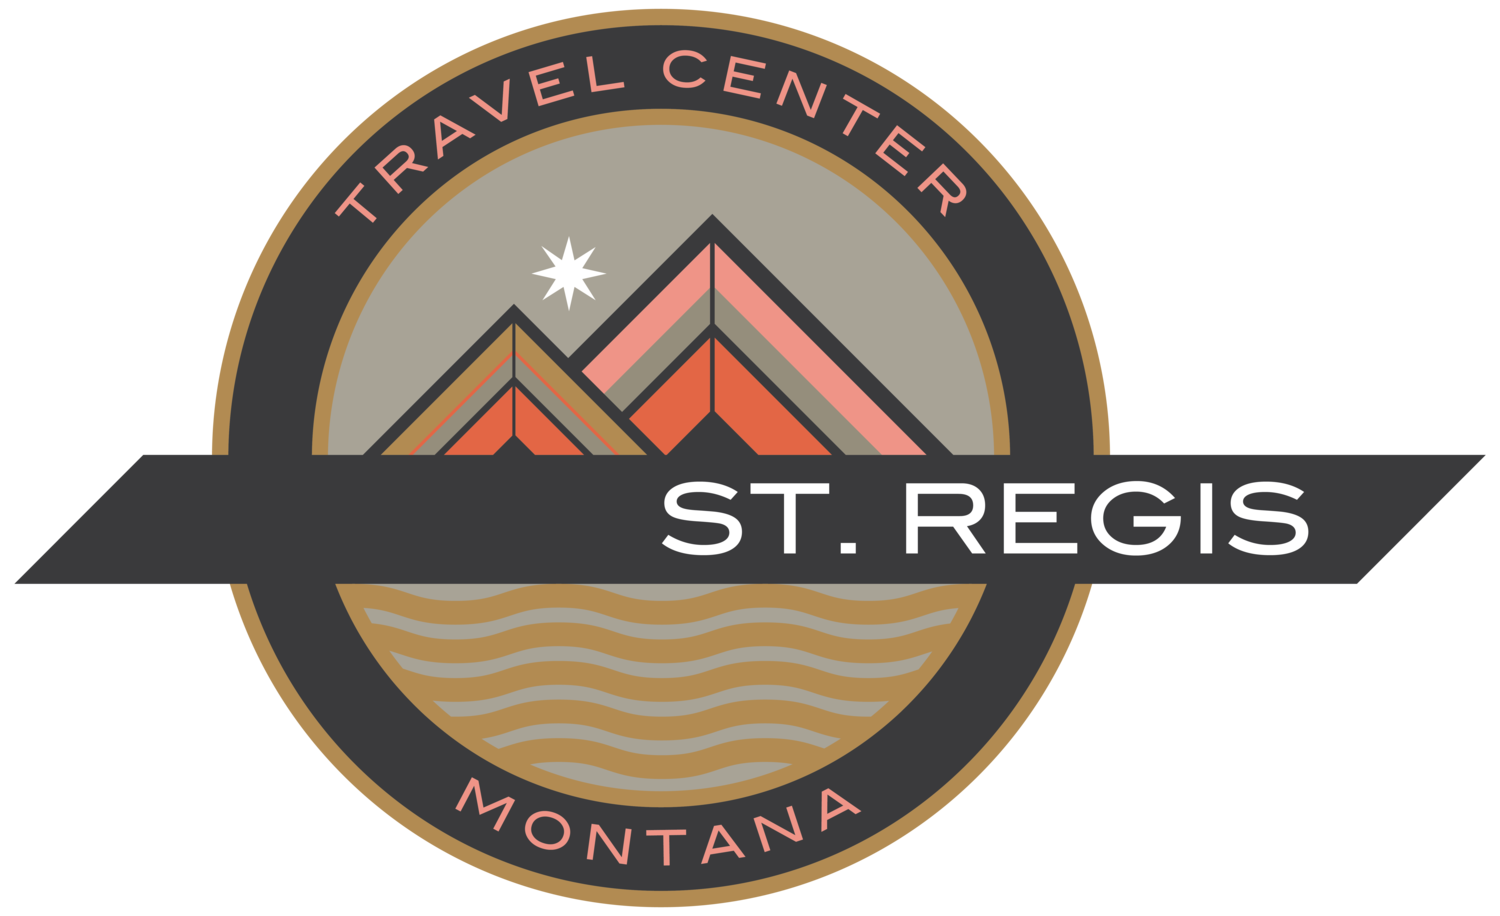 St. Regis Travel Center